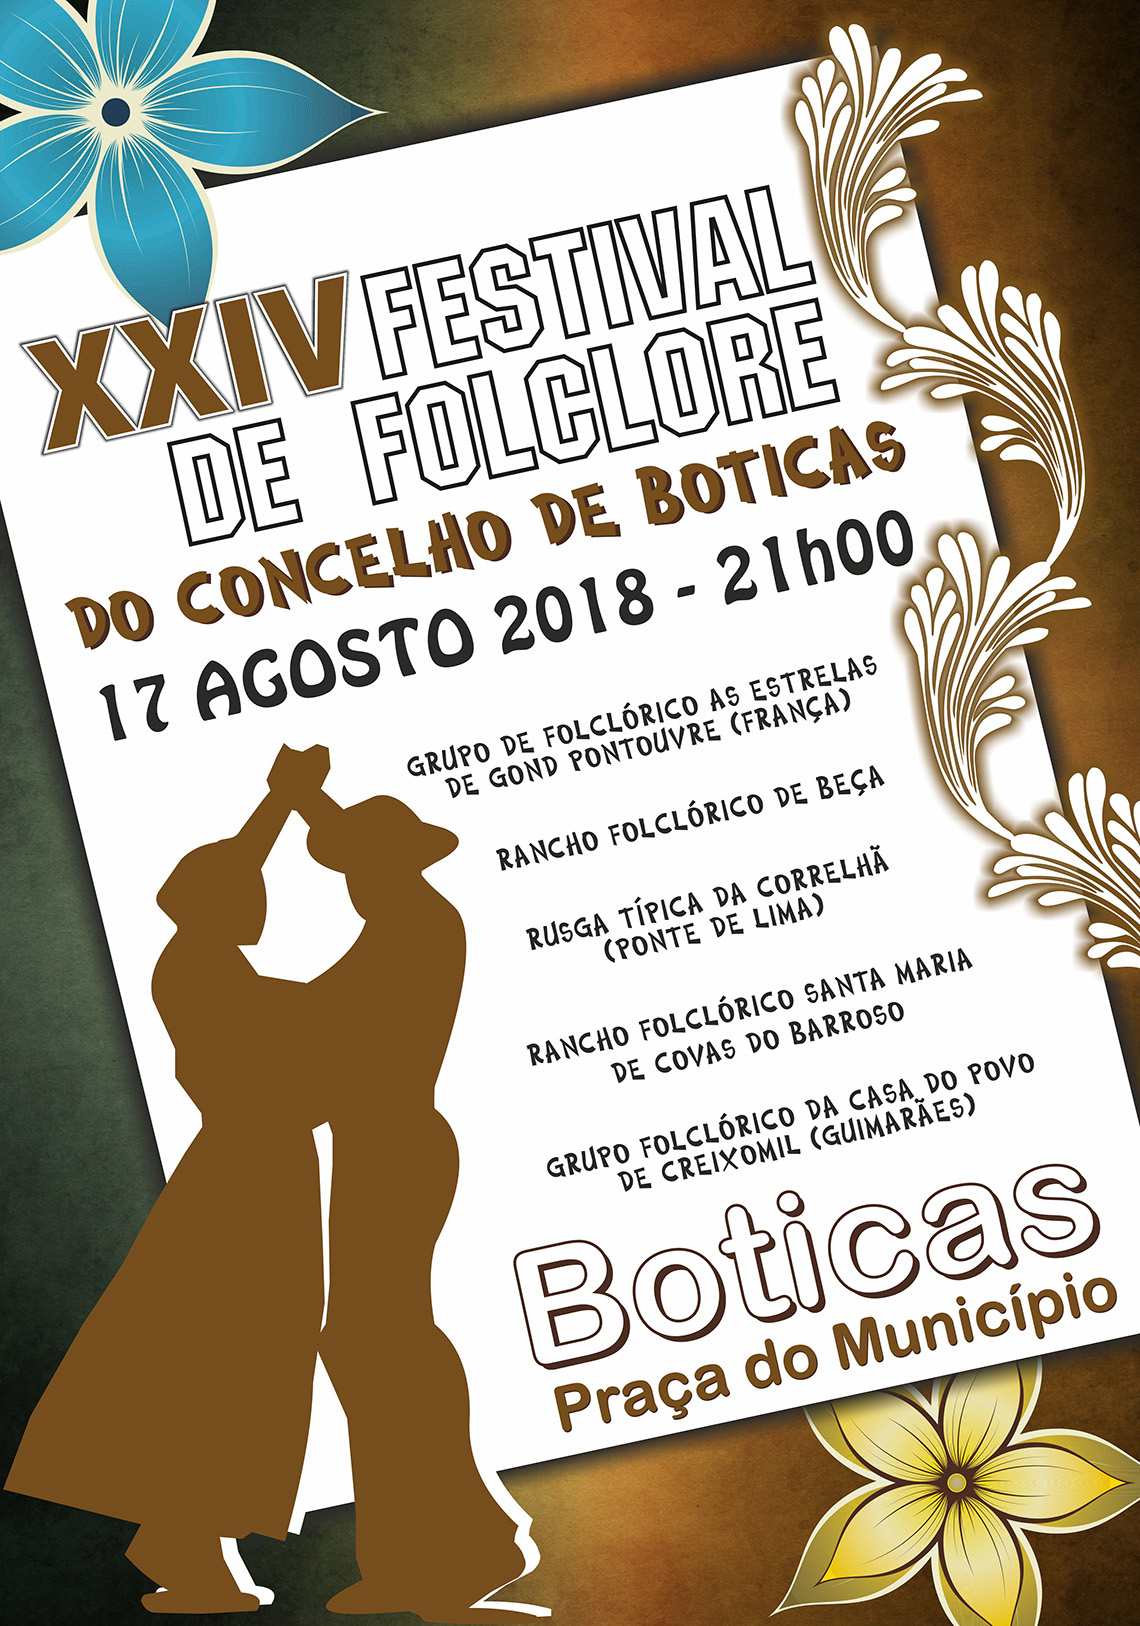 XXIV Festival de Folclore do Concelho de Boticas